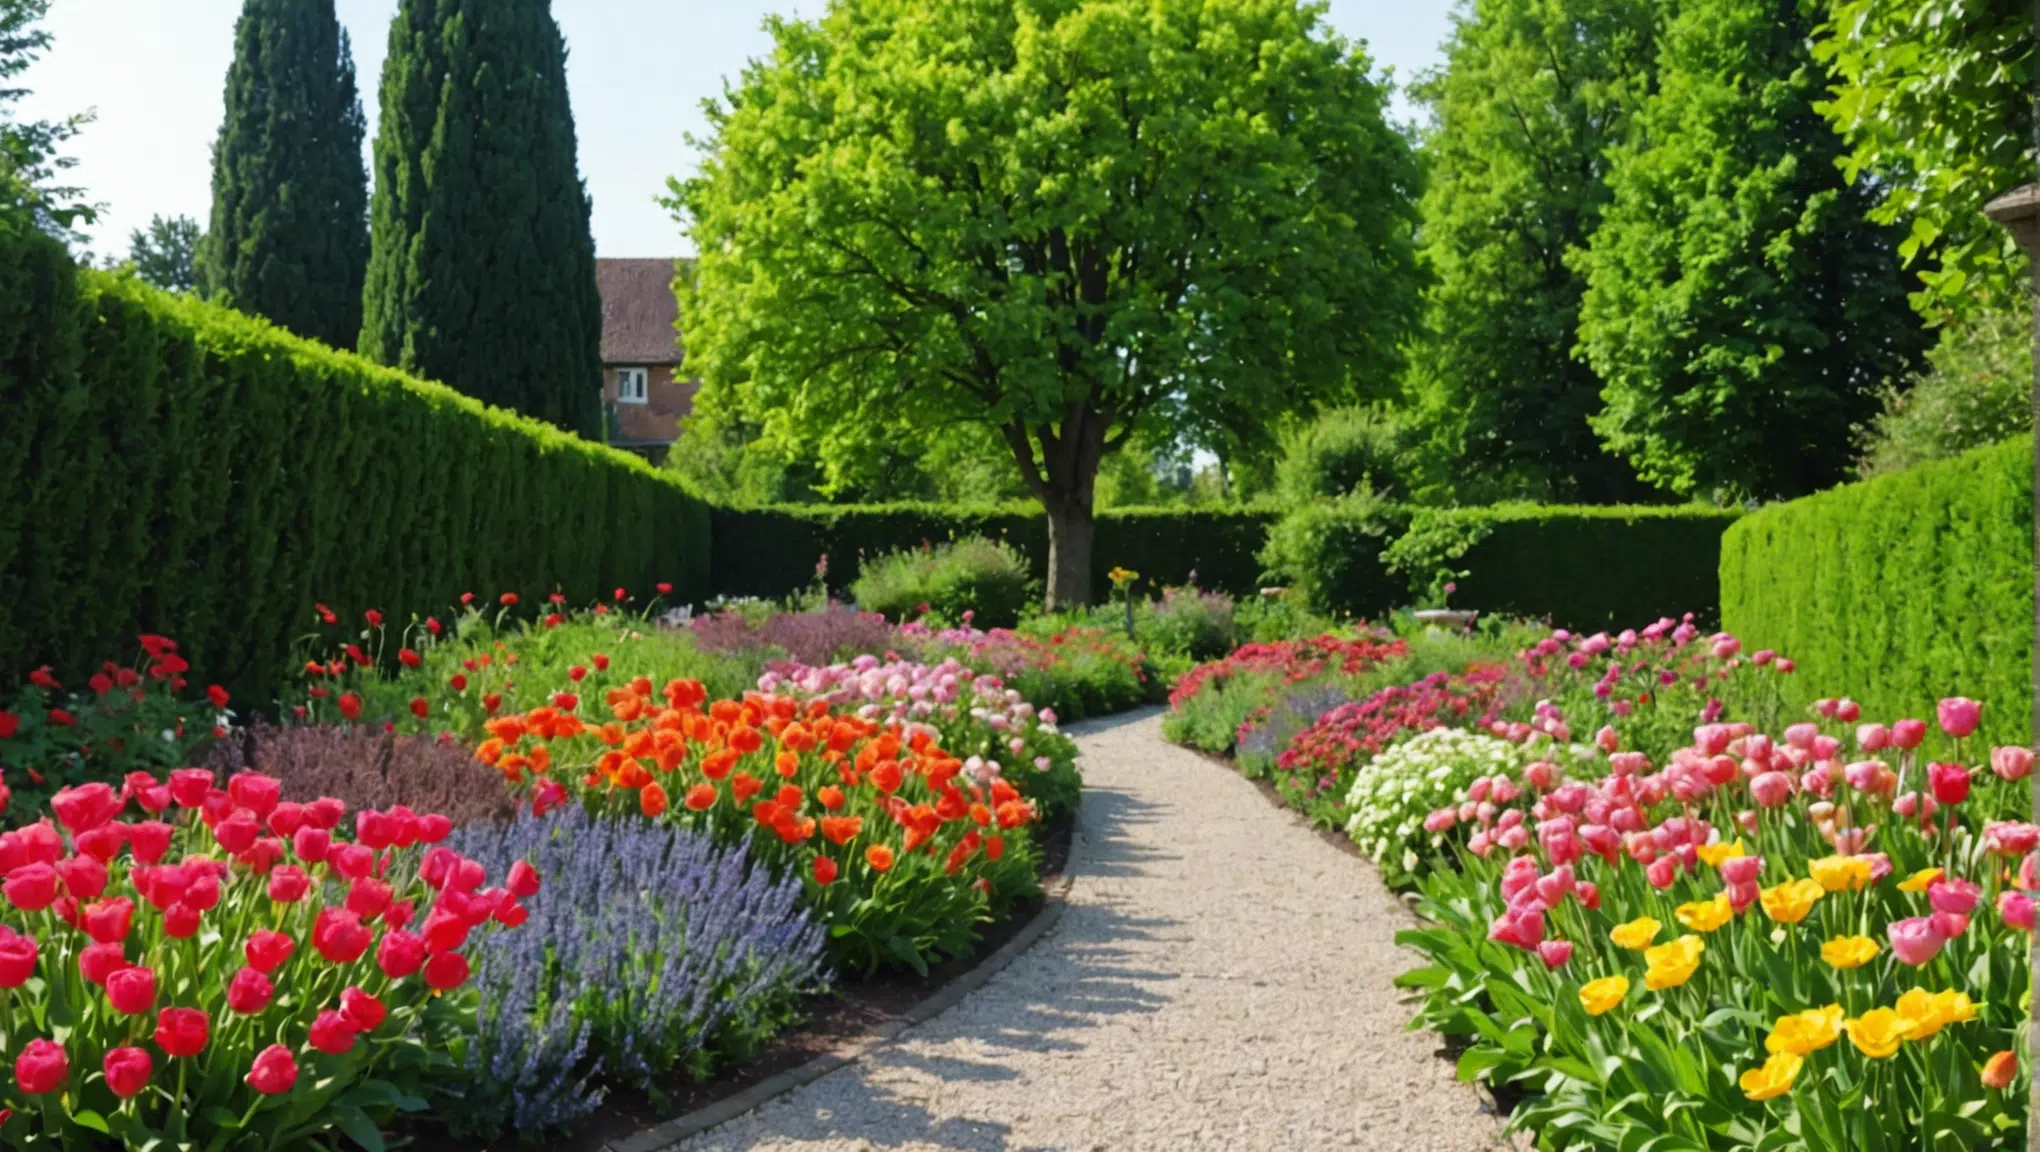 découvrez une astuce incroyable pour profiter d'un jardin fleuri tout au long de l'année. suivez nos conseils pour embellir votre jardin de manière durable et facilement.